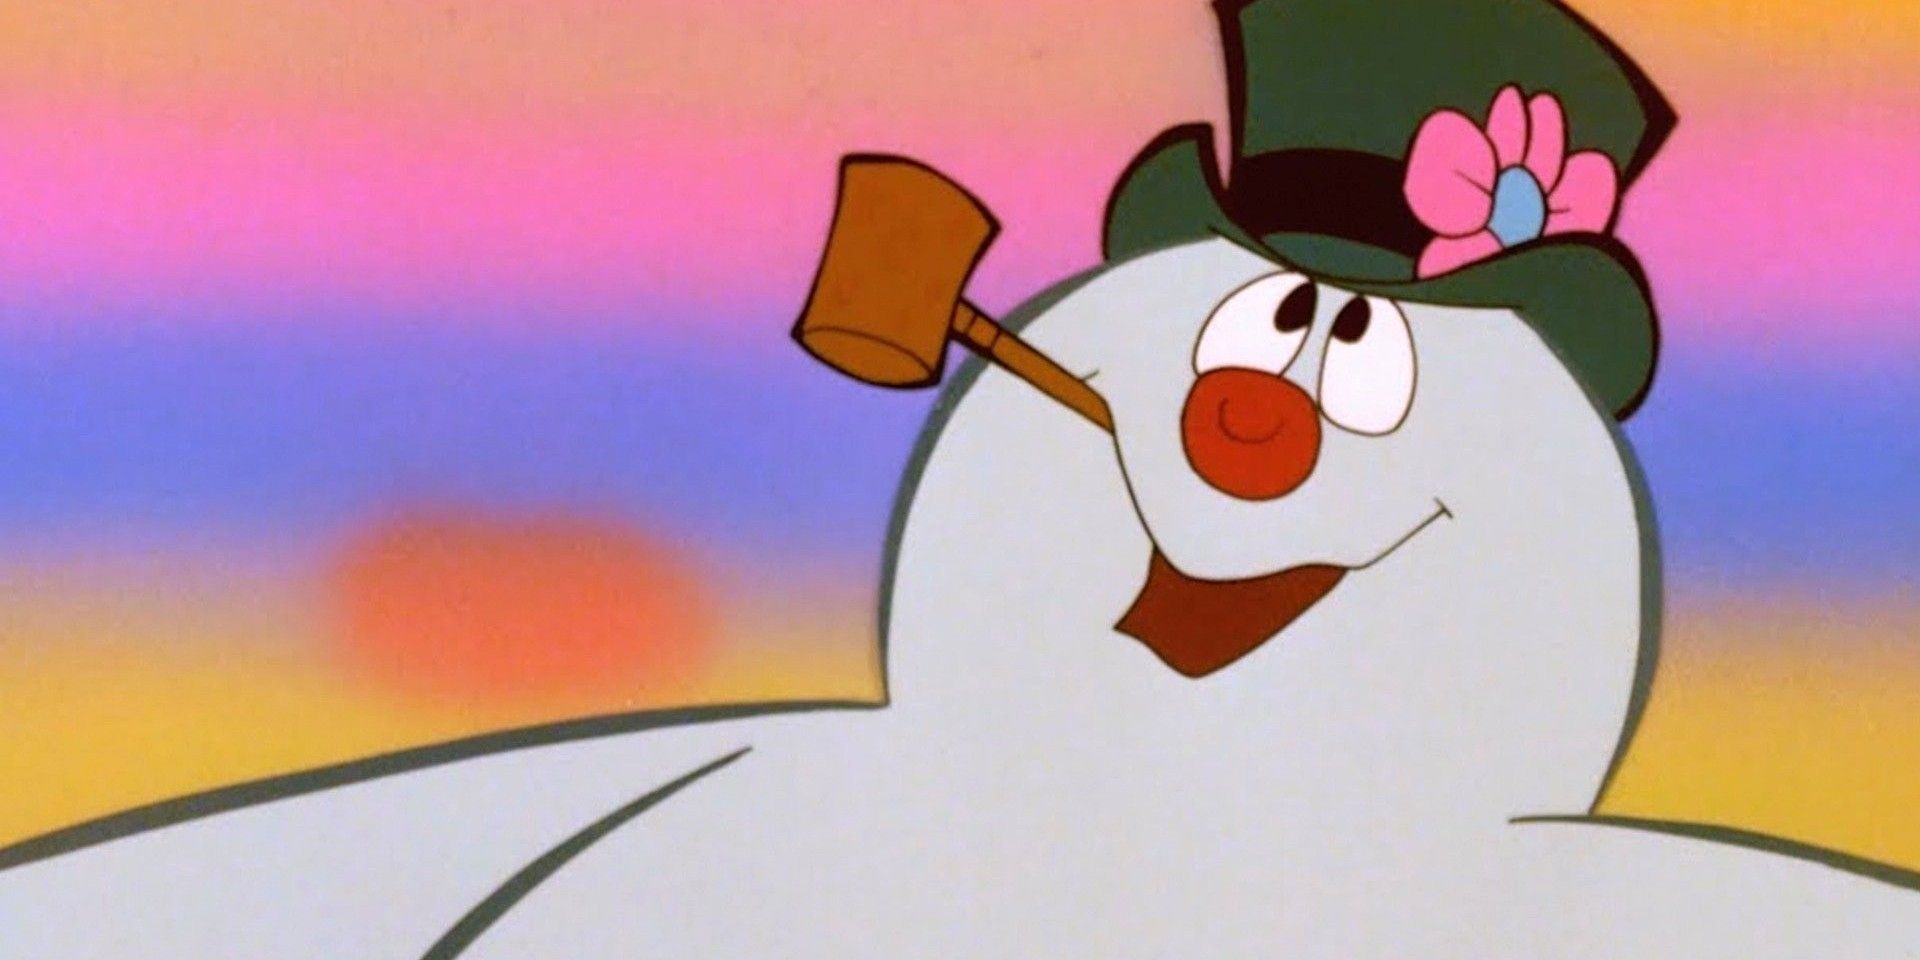 “Están matando al pobre niño”: los hábitos de fumar de Frosty en el clásico navideño de 1969 han horrorizado al verdadero médico